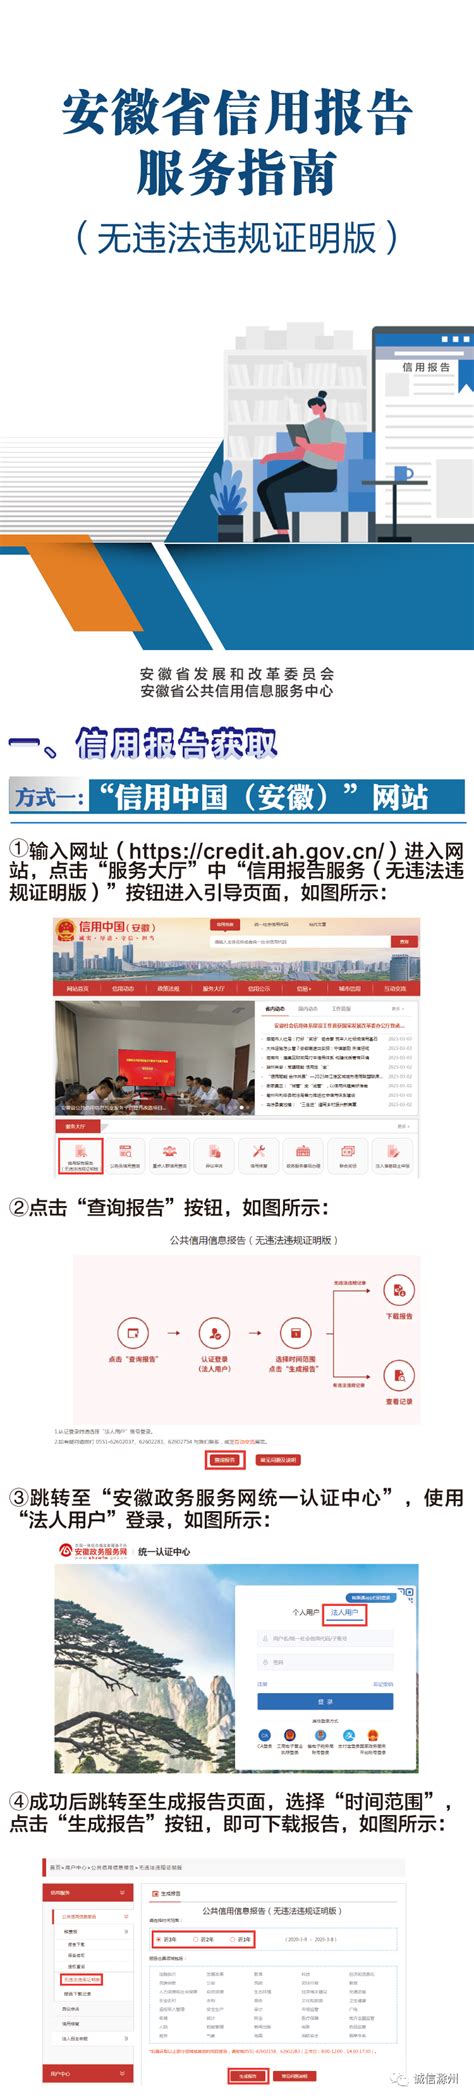 安徽太湖经济开发区LOGO征集公示-设计揭晓-设计大赛网